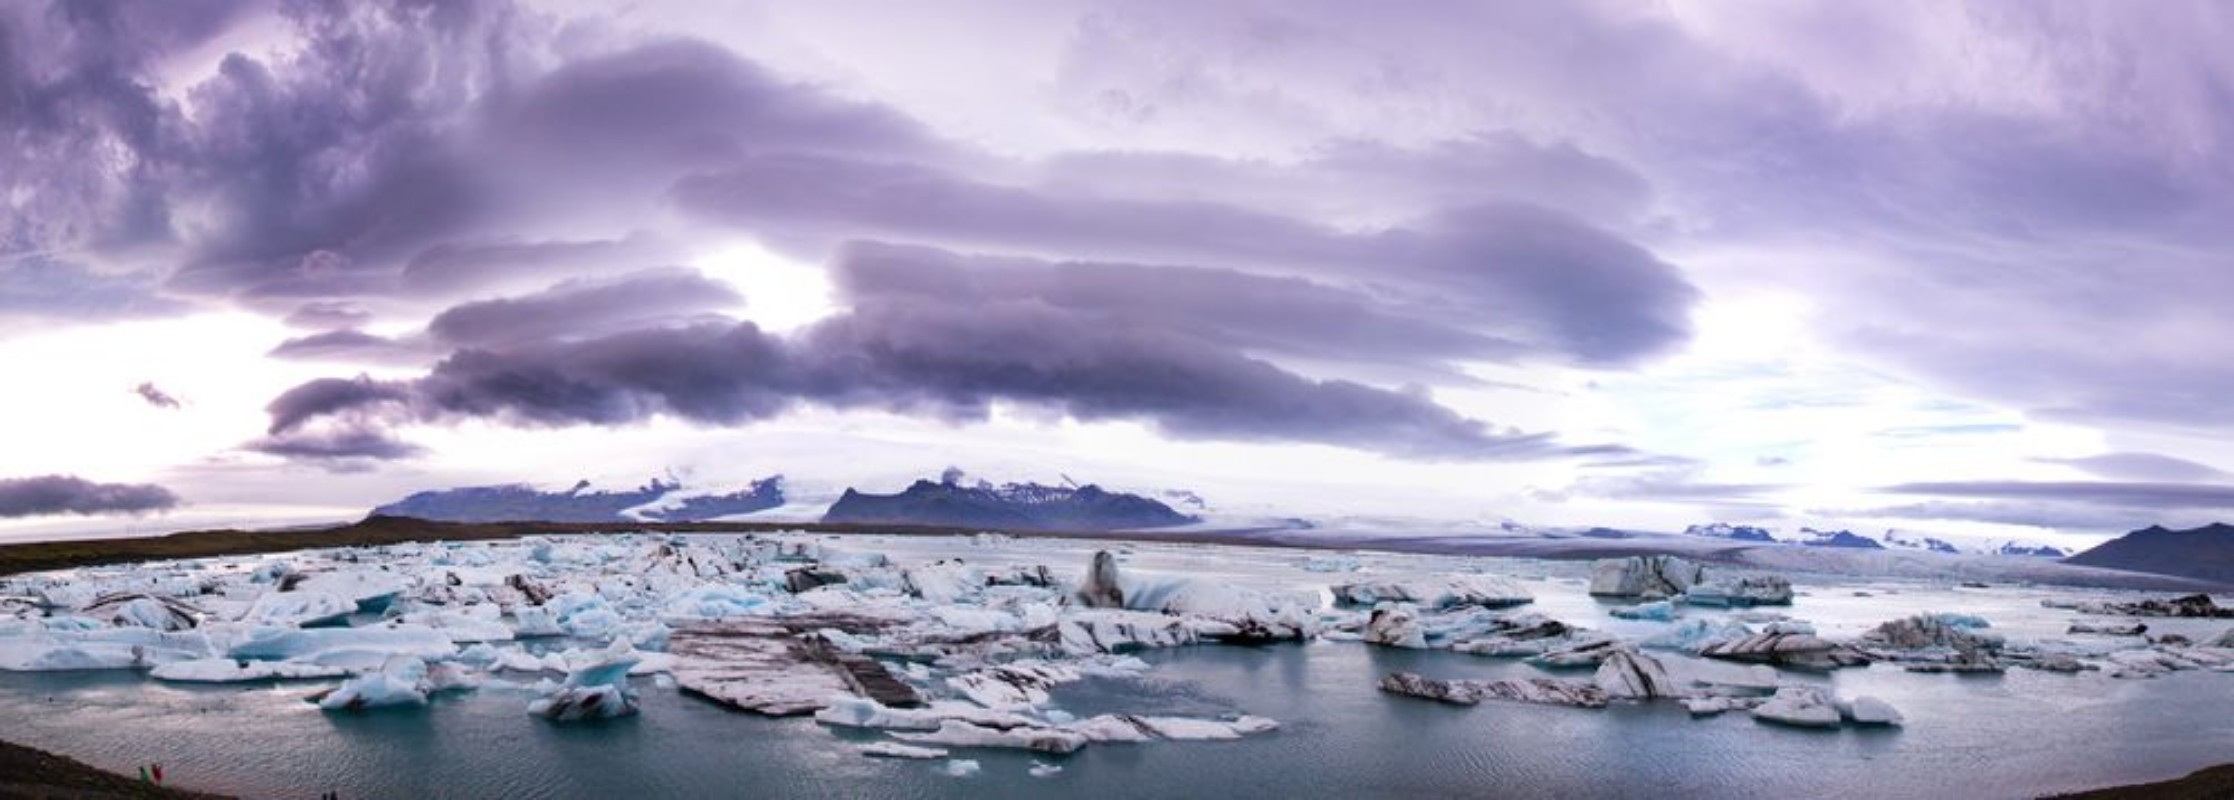 Afbeeldingen van Jkulsarlohn - Gletschersee Island  Icelad